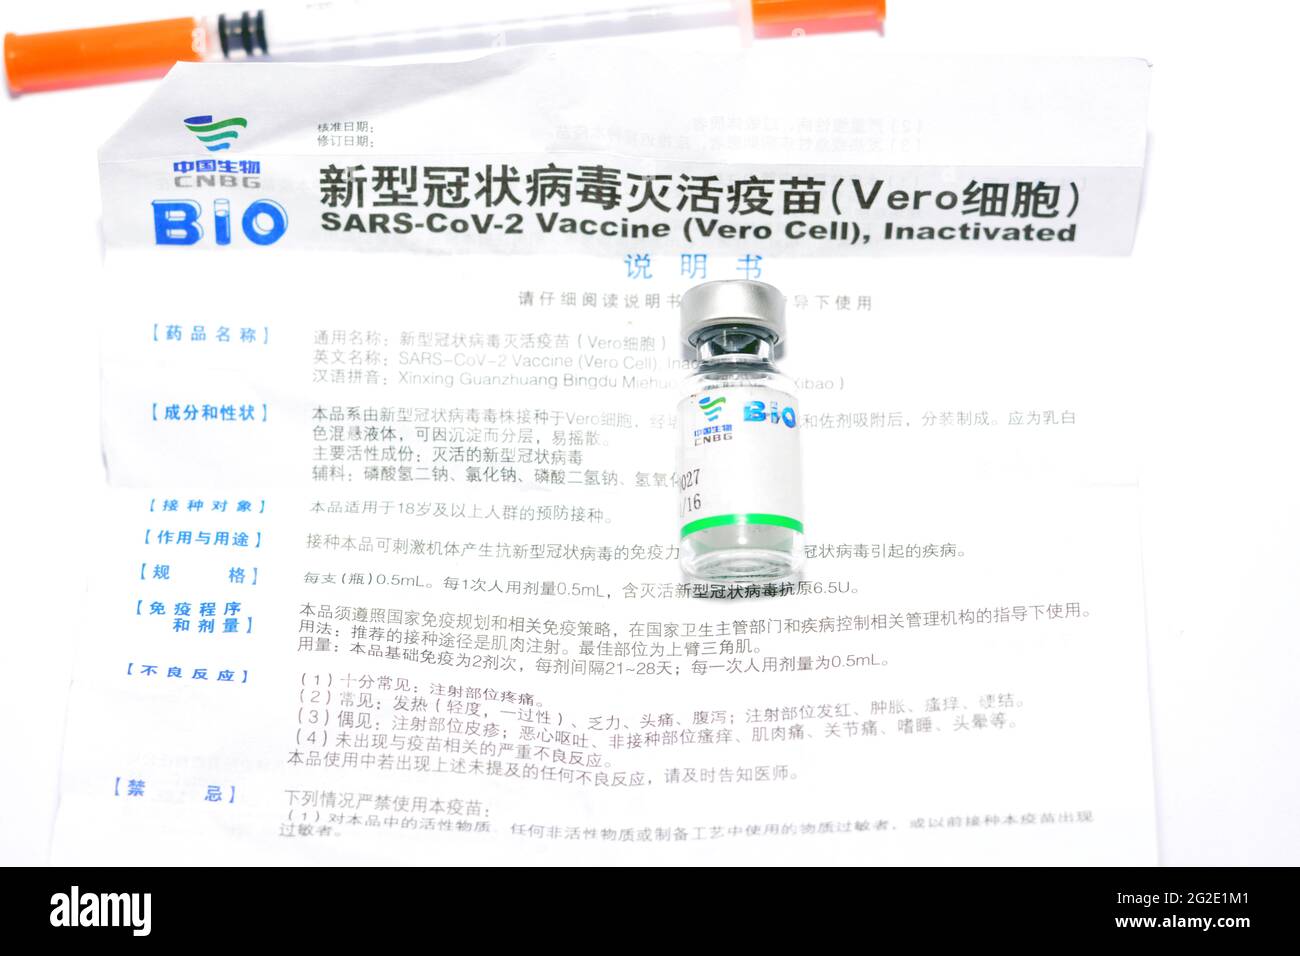 Sinopharm vaccin COVID-19 dose en flacon chargée dans une seringue , SARS-Cov-2 vaccin inactivé vero cellule, Sinopharm est une entreprise publique chinoise Banque D'Images